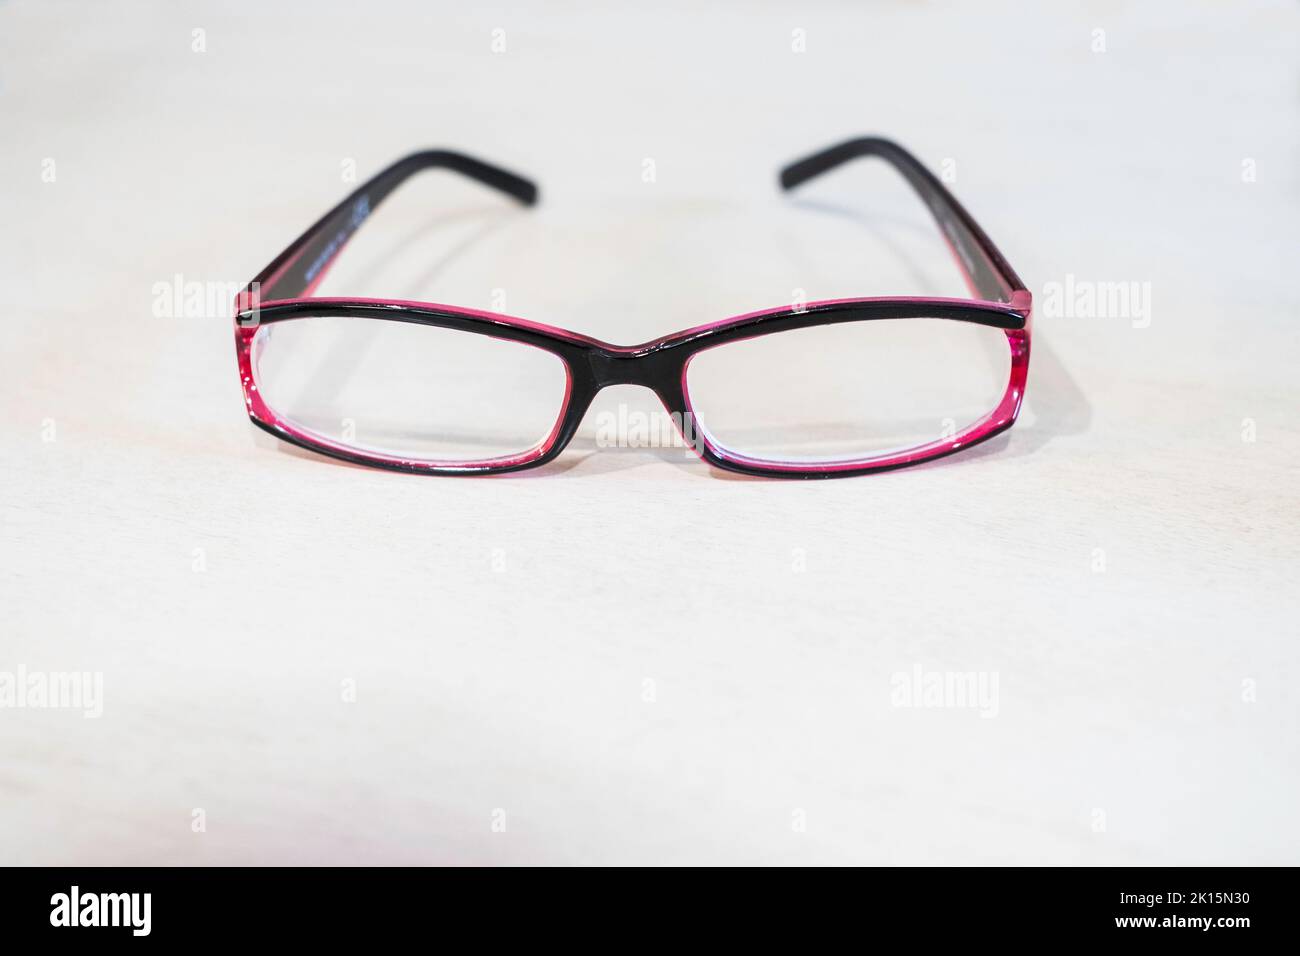 Par de gafas de lectura de visión única de mujeres de color púrpura, o sobre un fondo blanco. Foto de stock